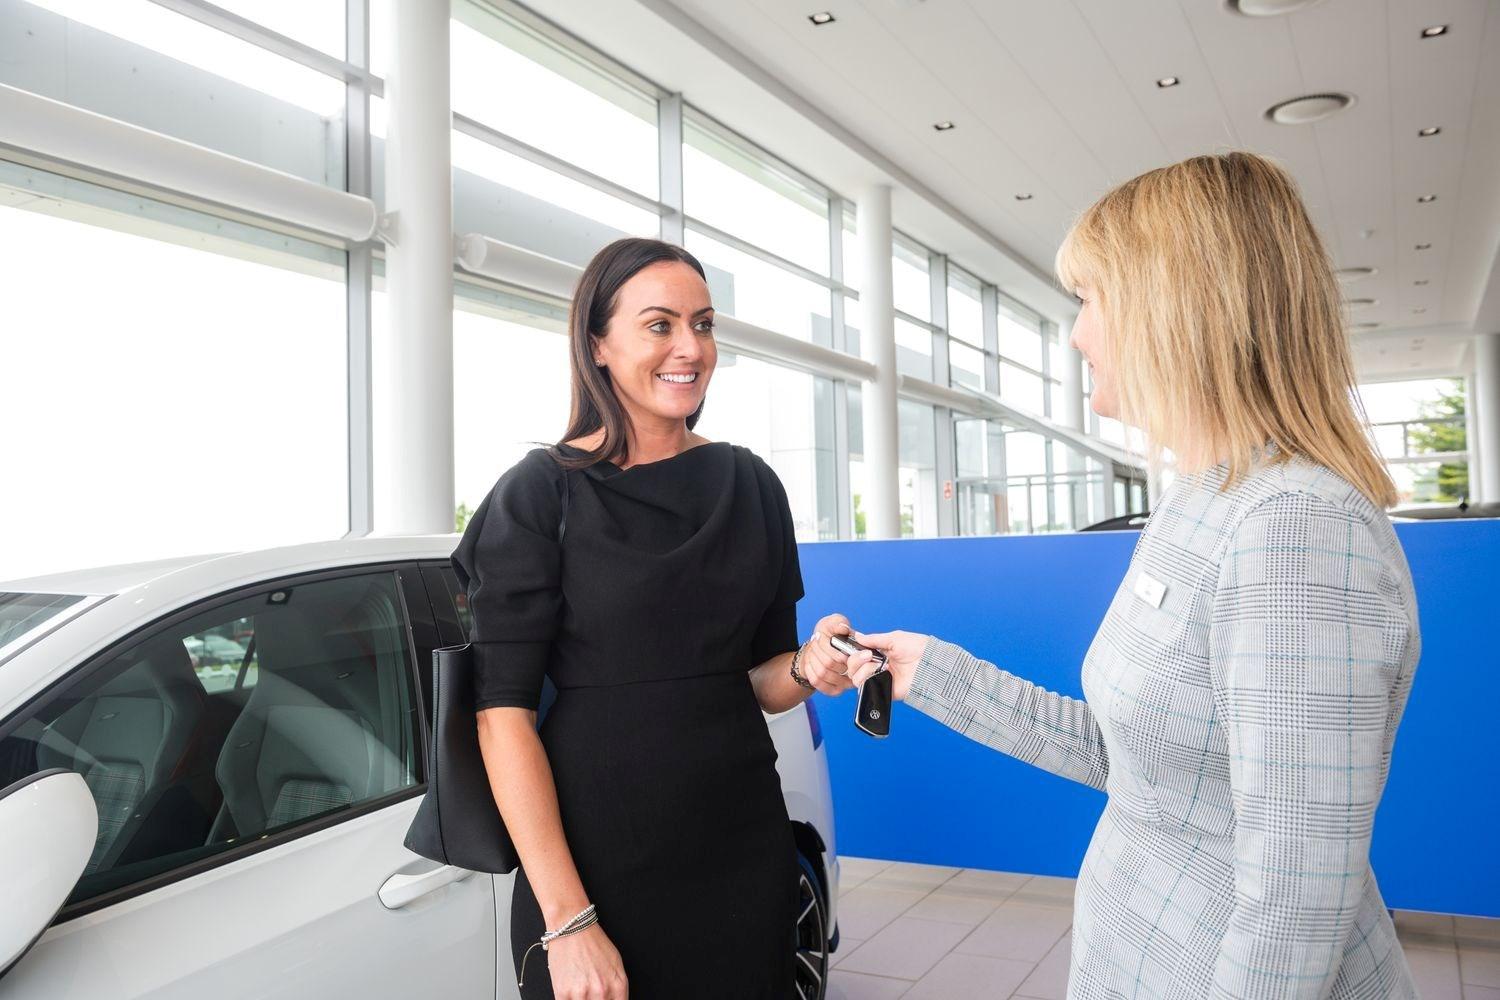 Volkswagen Sales Specialist hands over new Volkswagen Golf keys to smiling customer